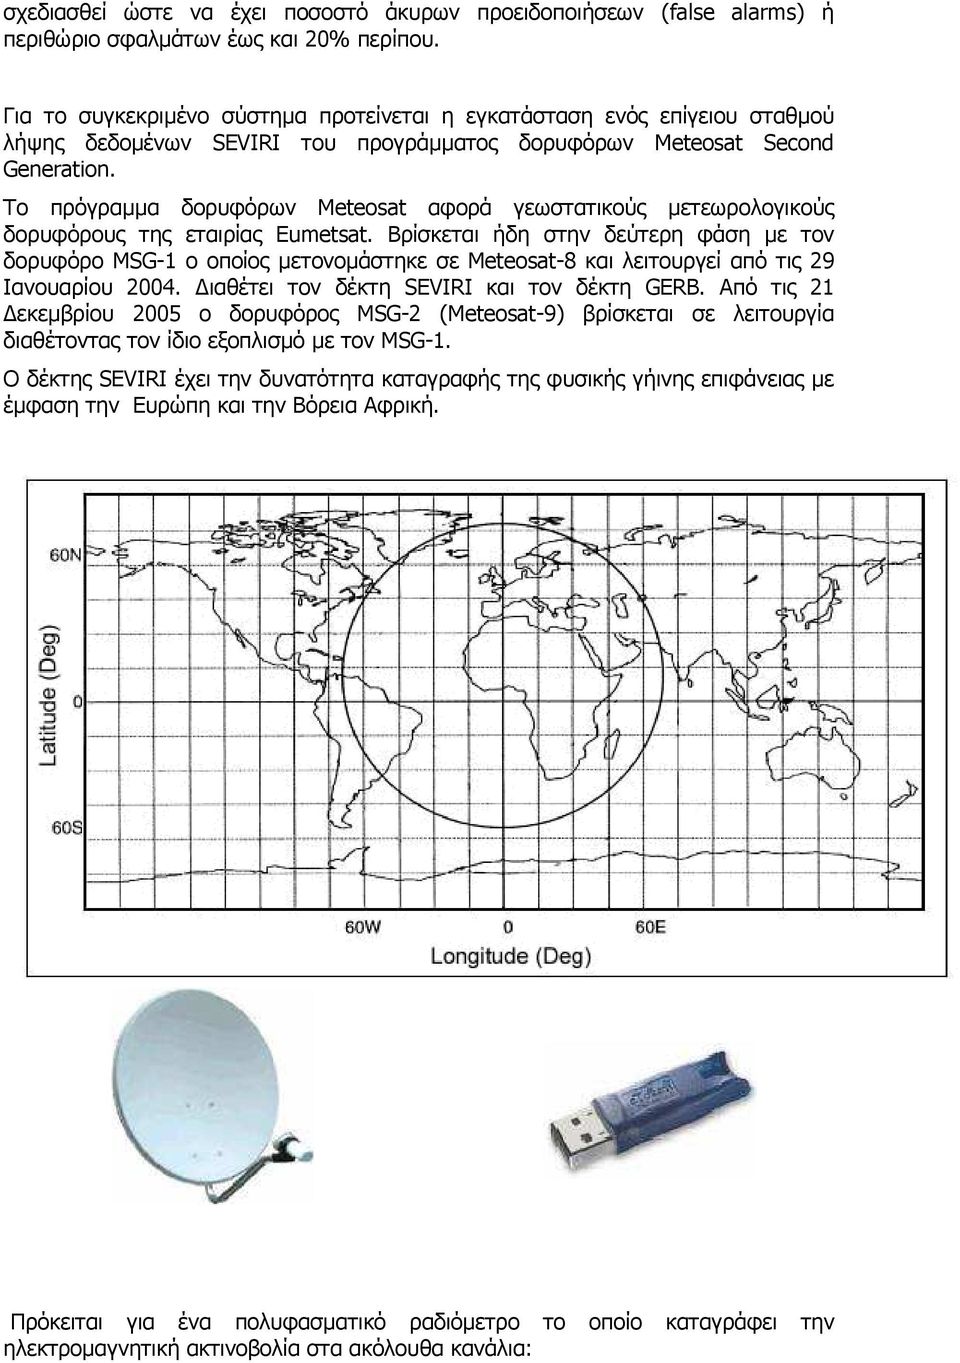 Το πρόγραµµα δορυφόρων Meteosat αφορά γεωστατικούς µετεωρολογικούς δορυφόρους της εταιρίας Eumetsat.